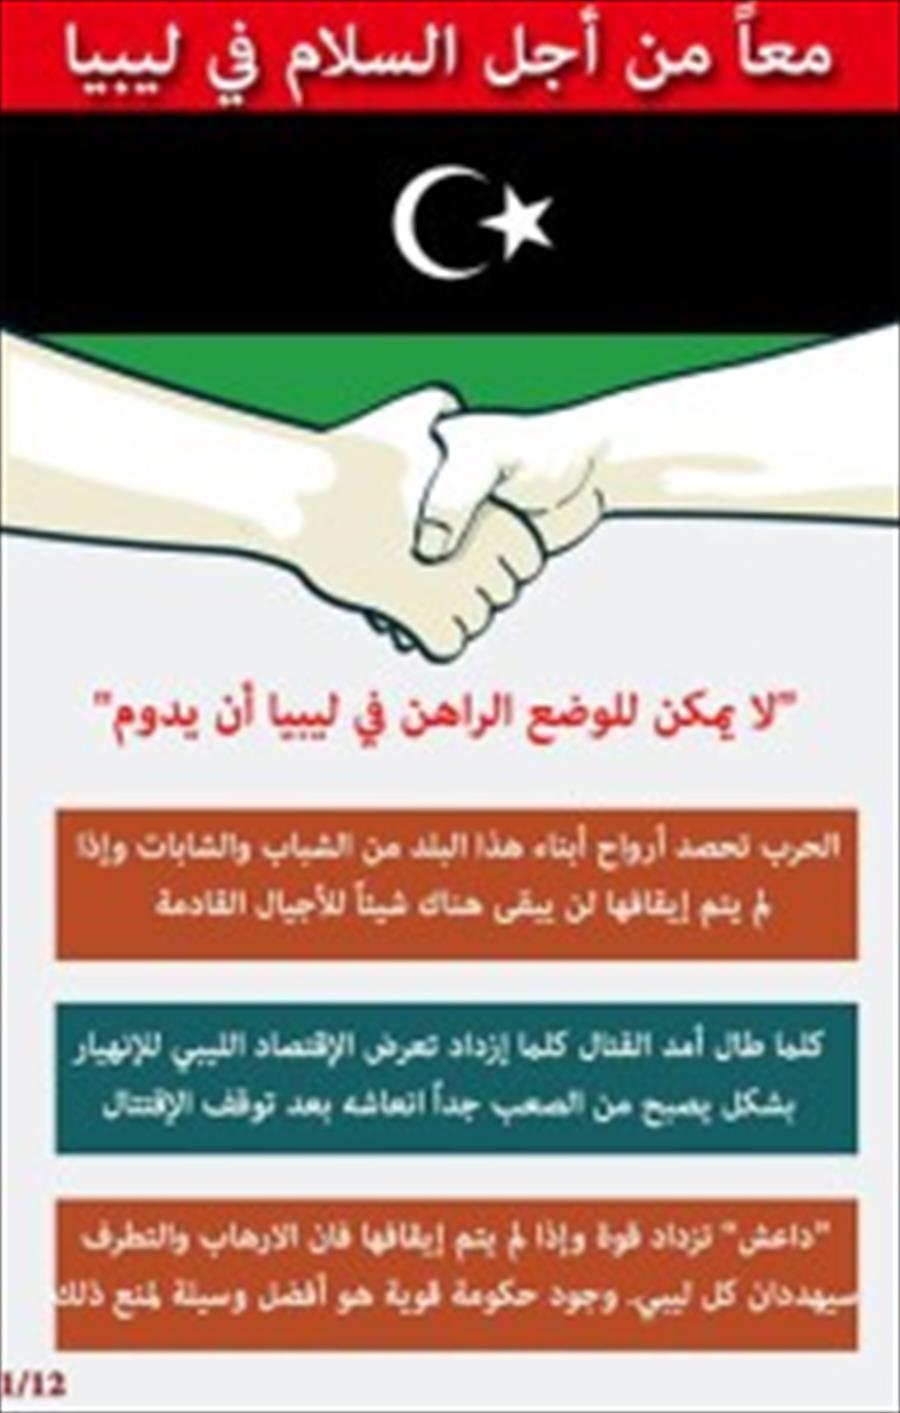 البعثة الأممية في ليبيا توزع منشورات «معًا من أجل السلام»